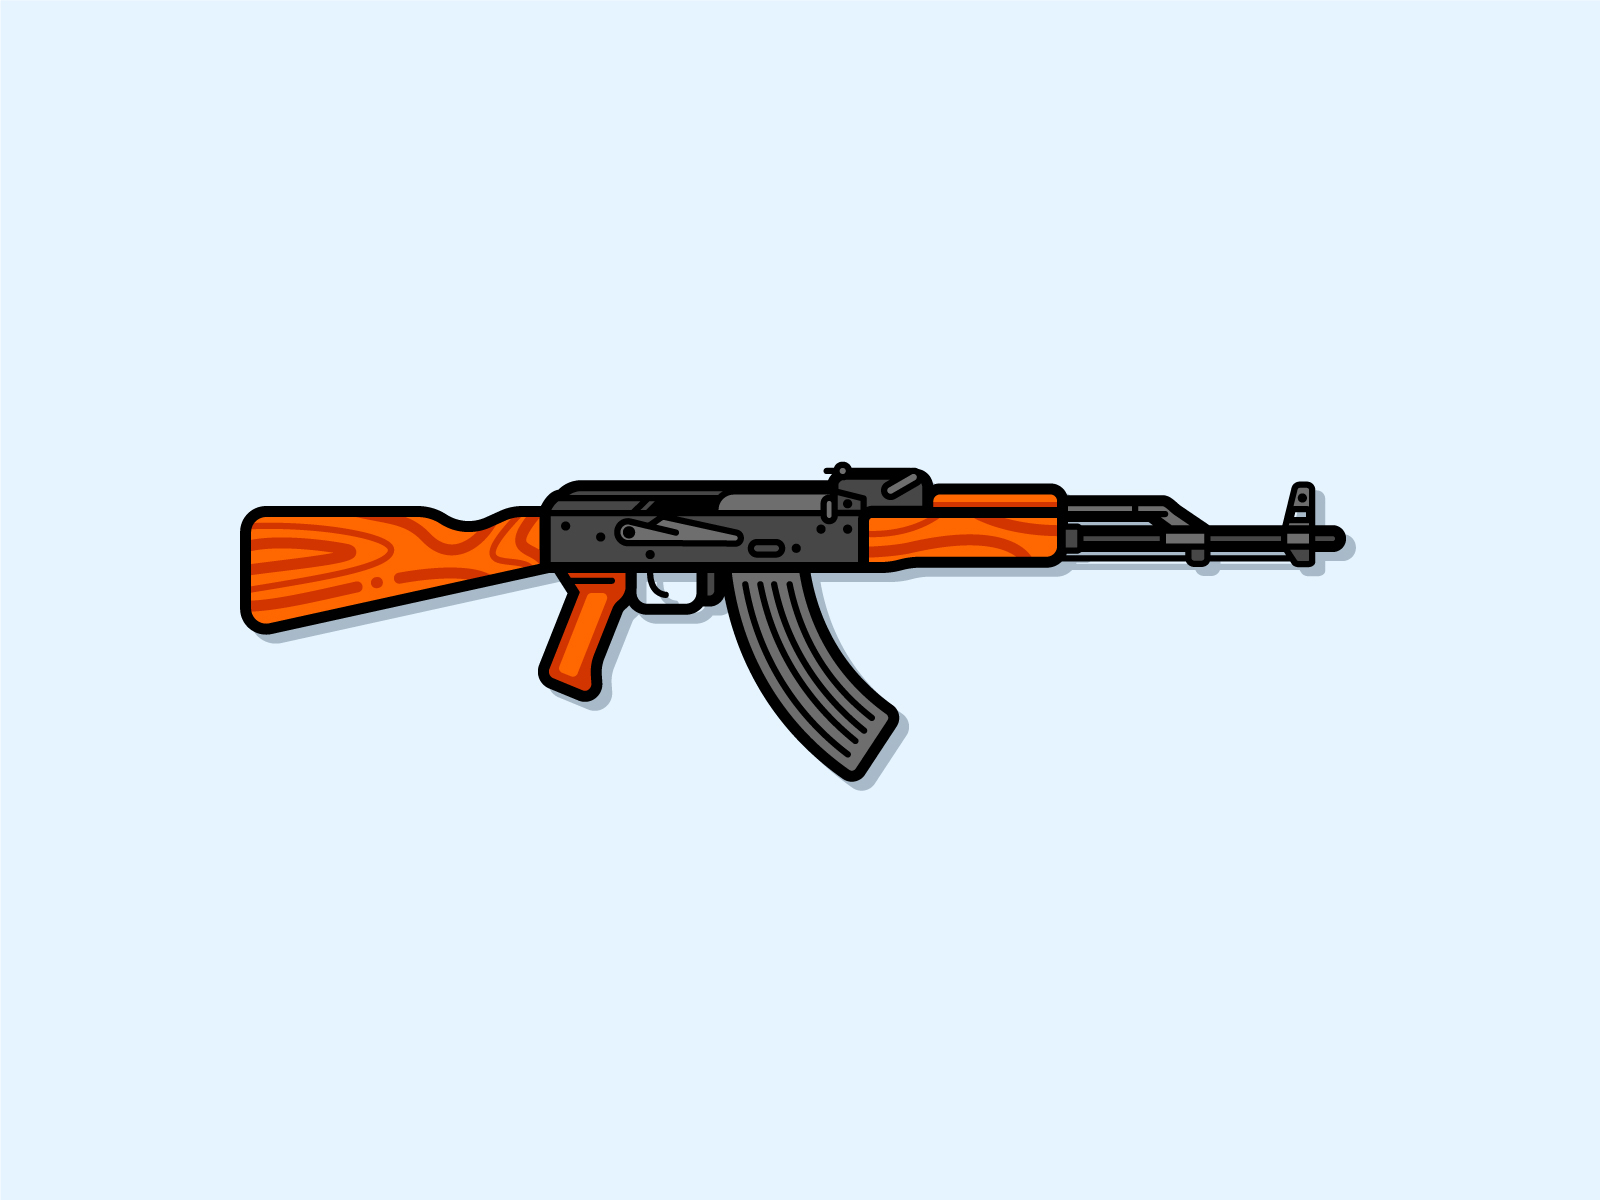 AK-47 designed by Evgeniya Dzhumm. 